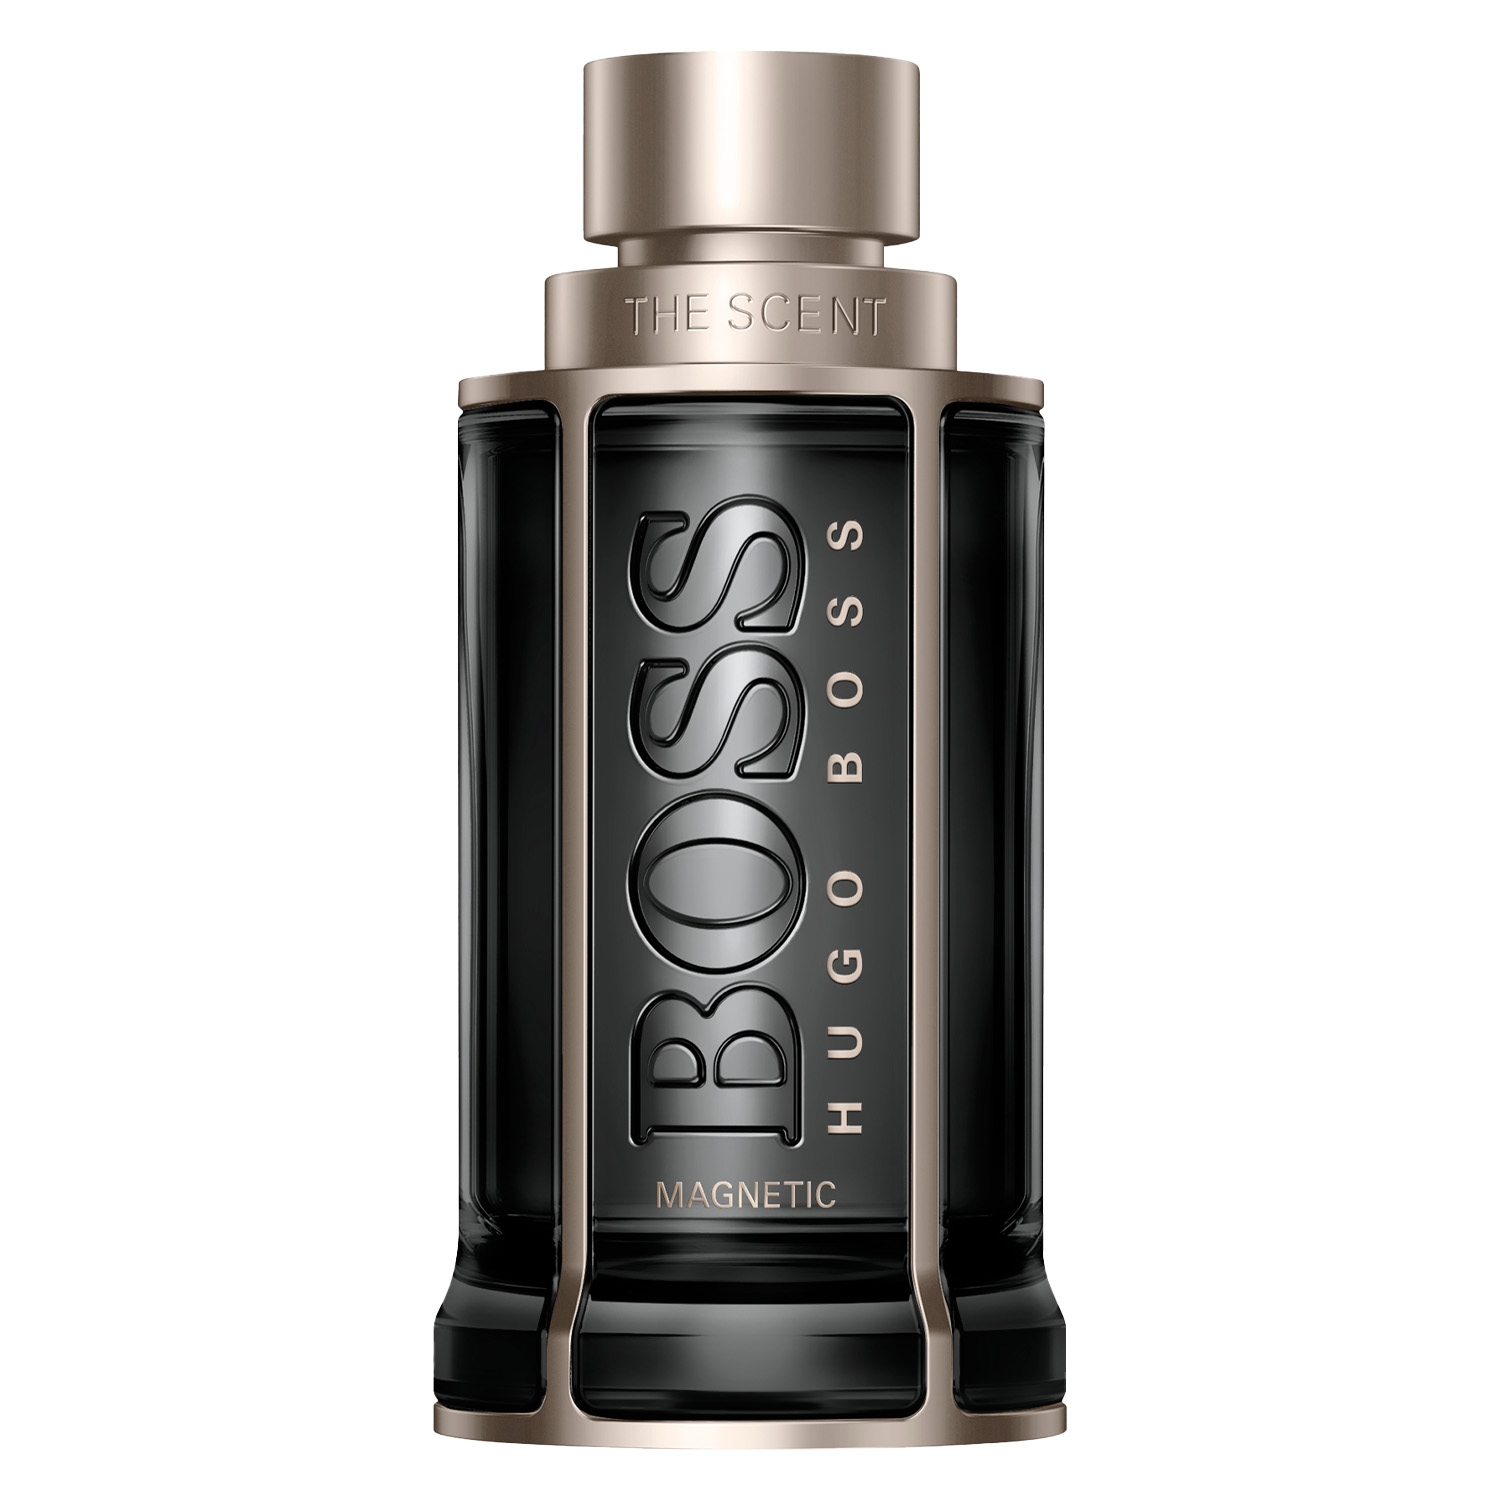 Produktbild von Boss The Scent - Magnetic Eau de Parfum for Him